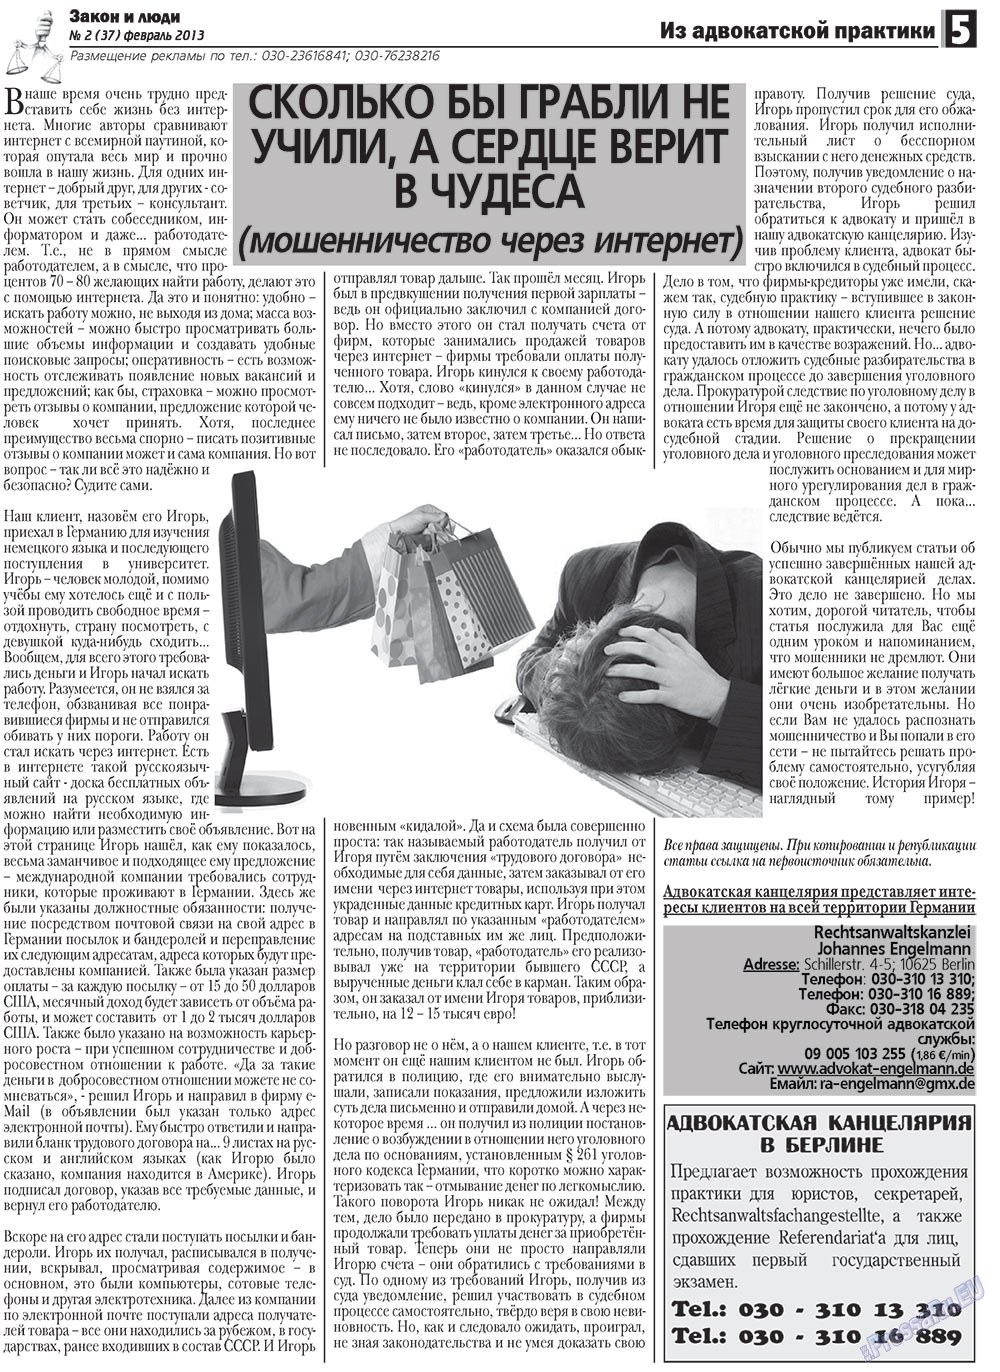 Закон и люди, газета. 2013 №2 стр.5